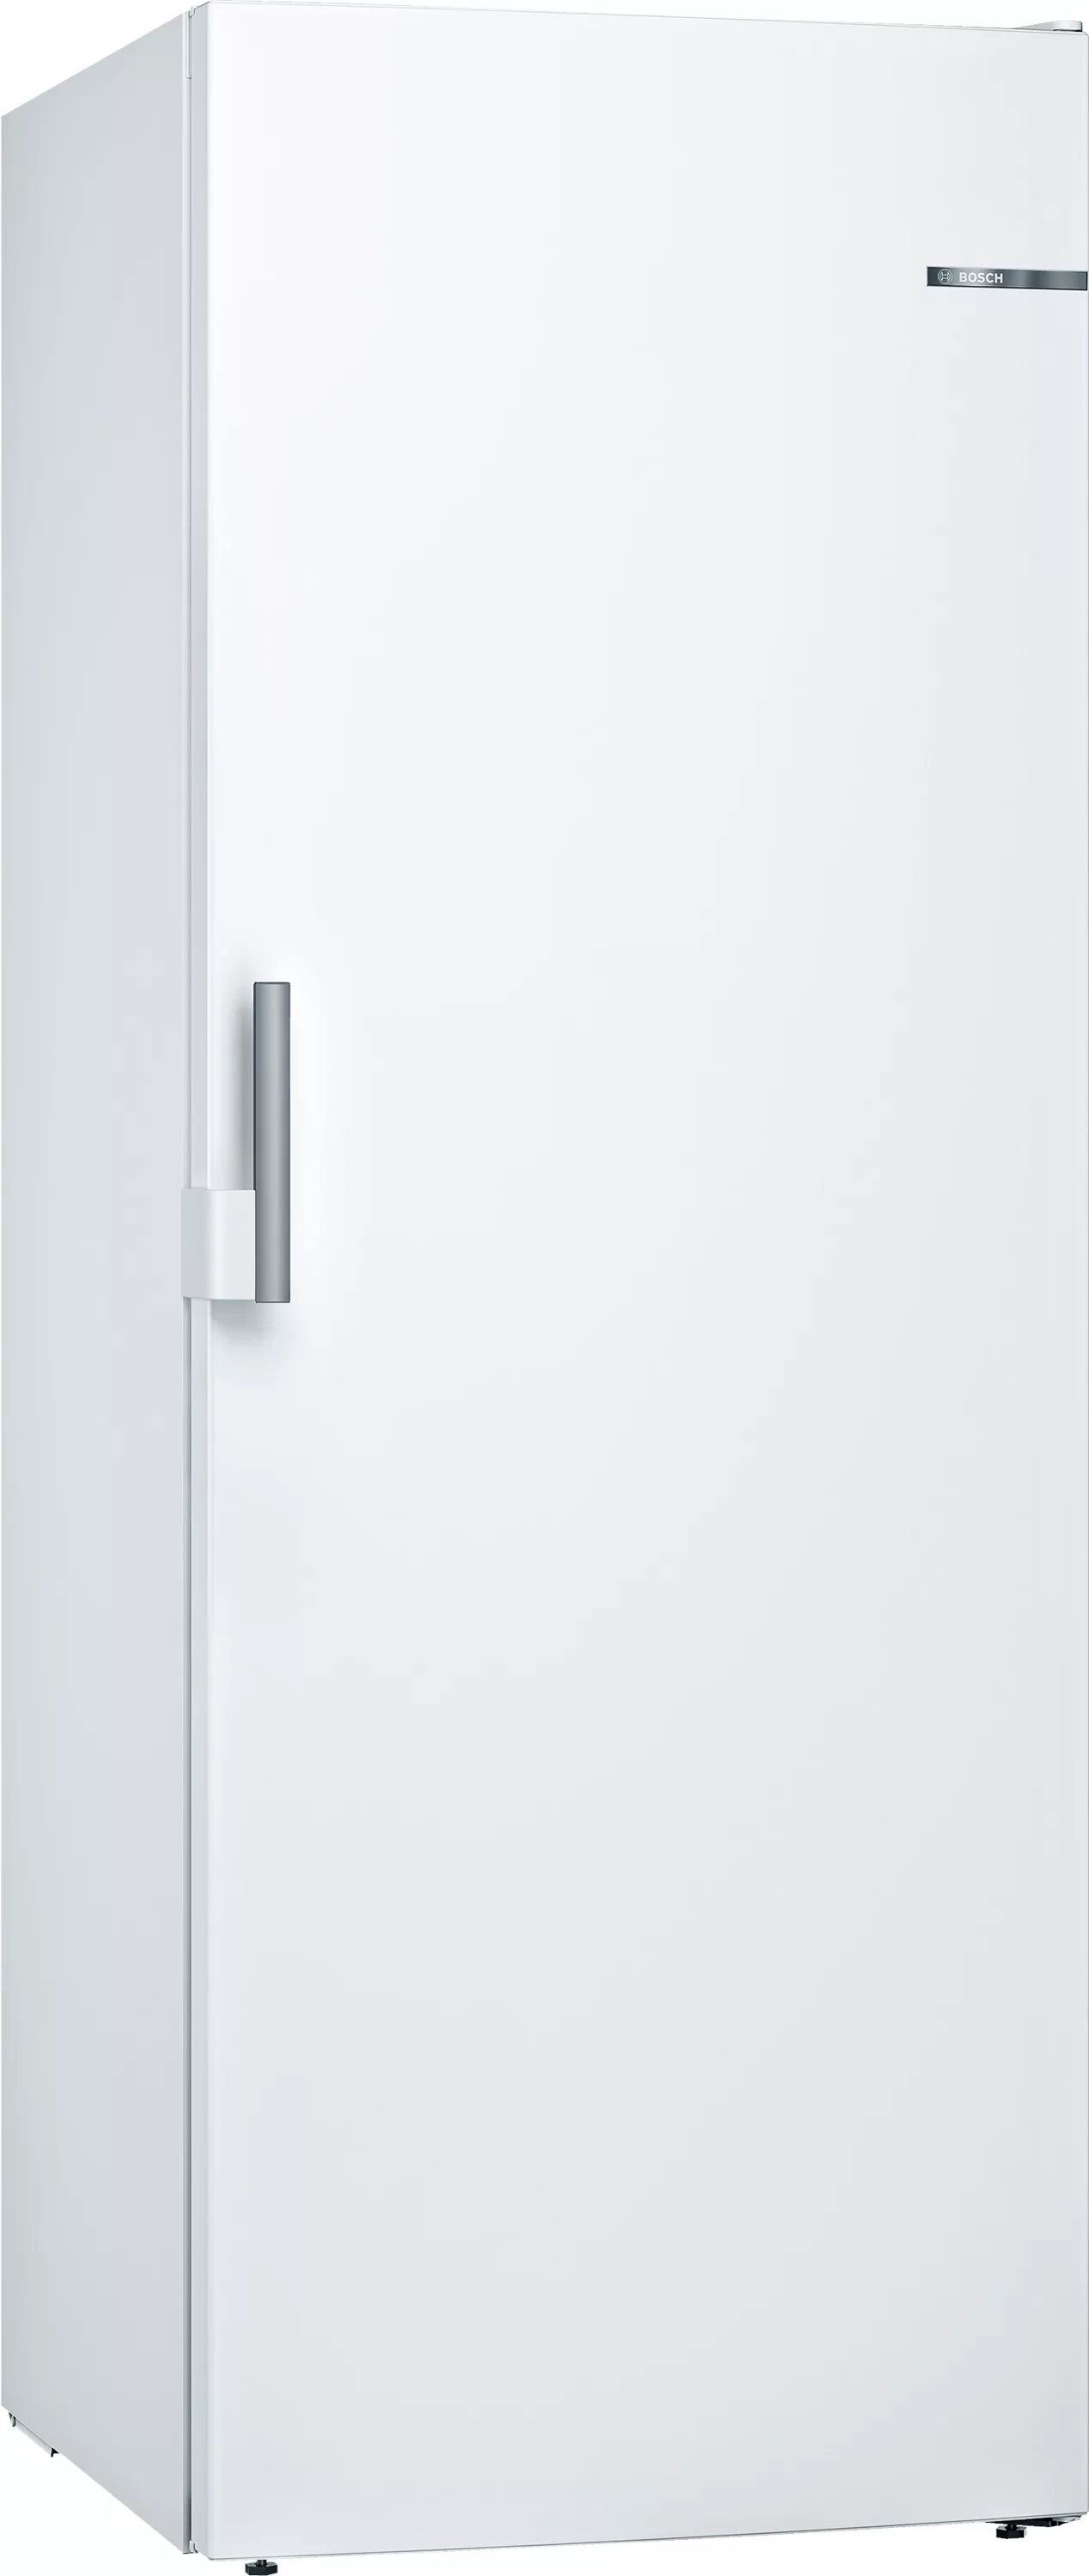 Bosch Serie 6, Freistehender Gefrierschrank, 191 x 70 cm, Weiß, GSN58EWCV